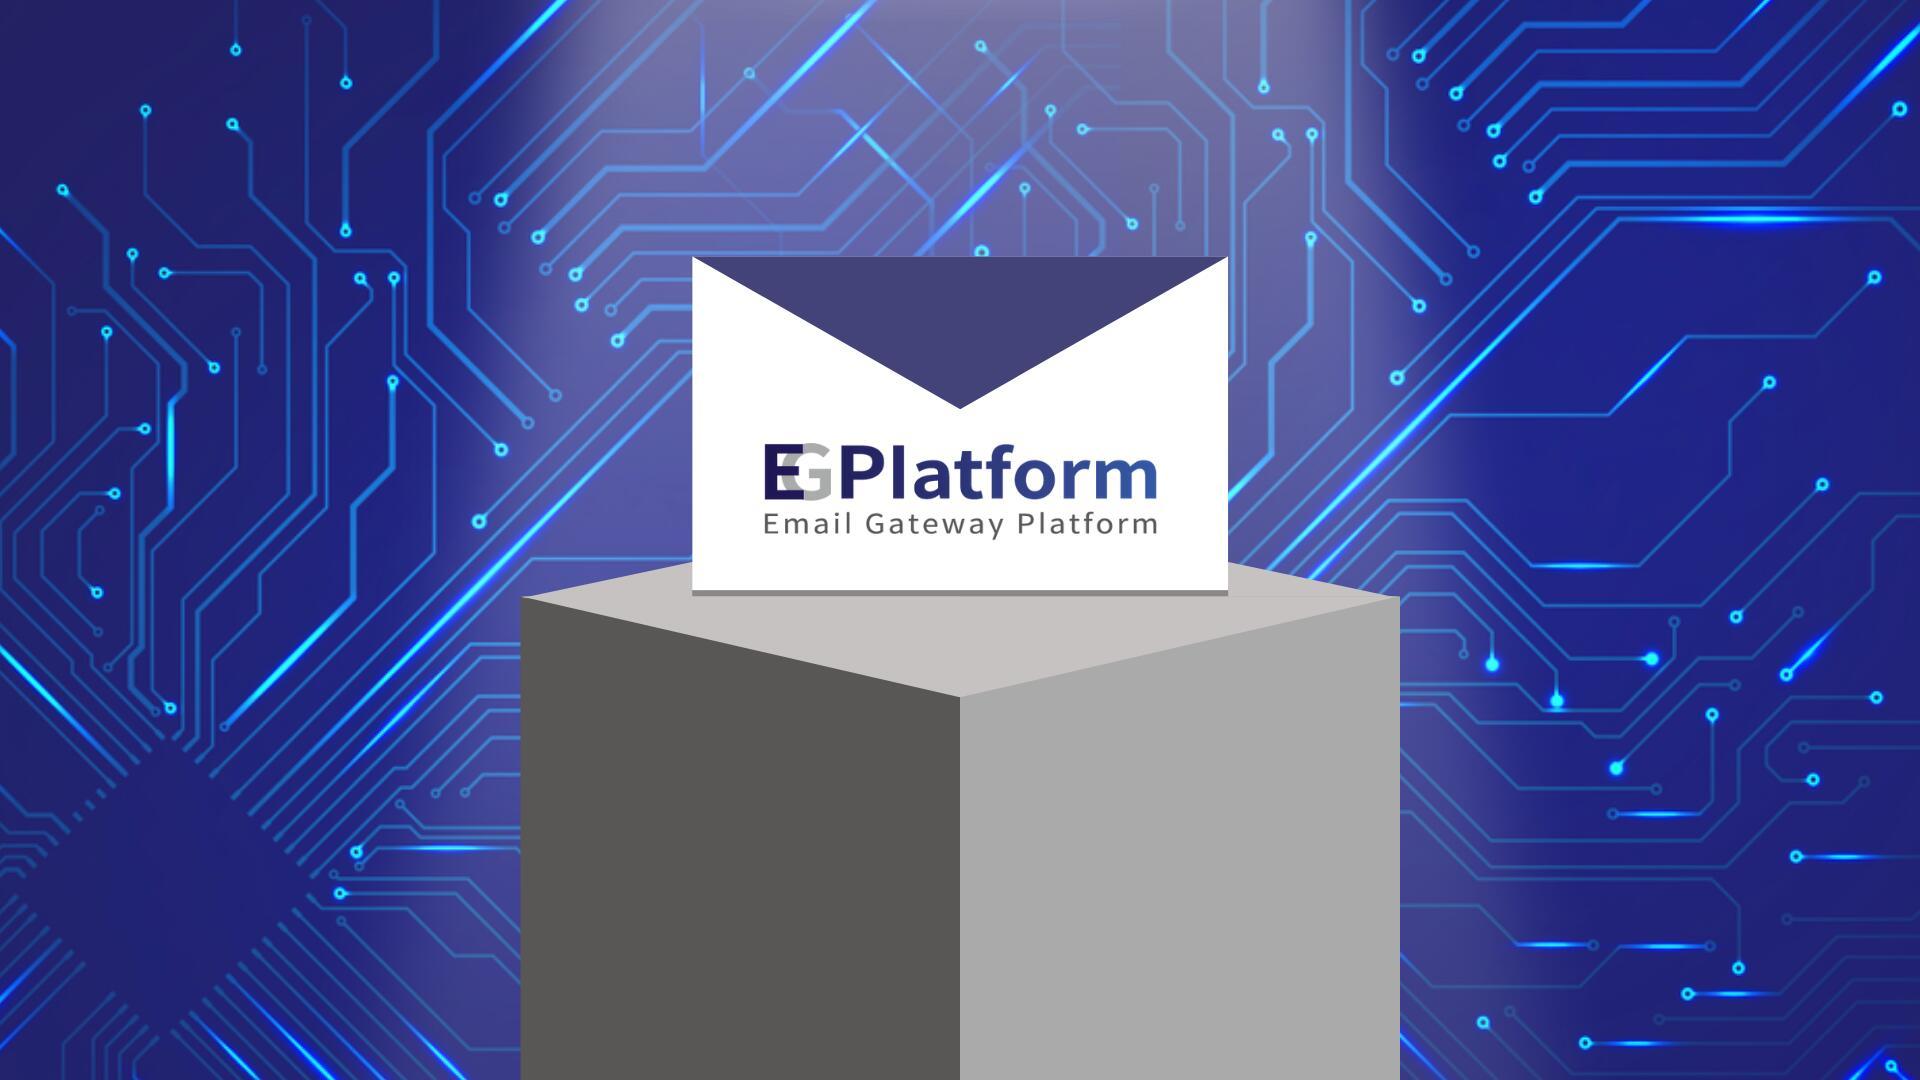 How does EG Platform secure business email?